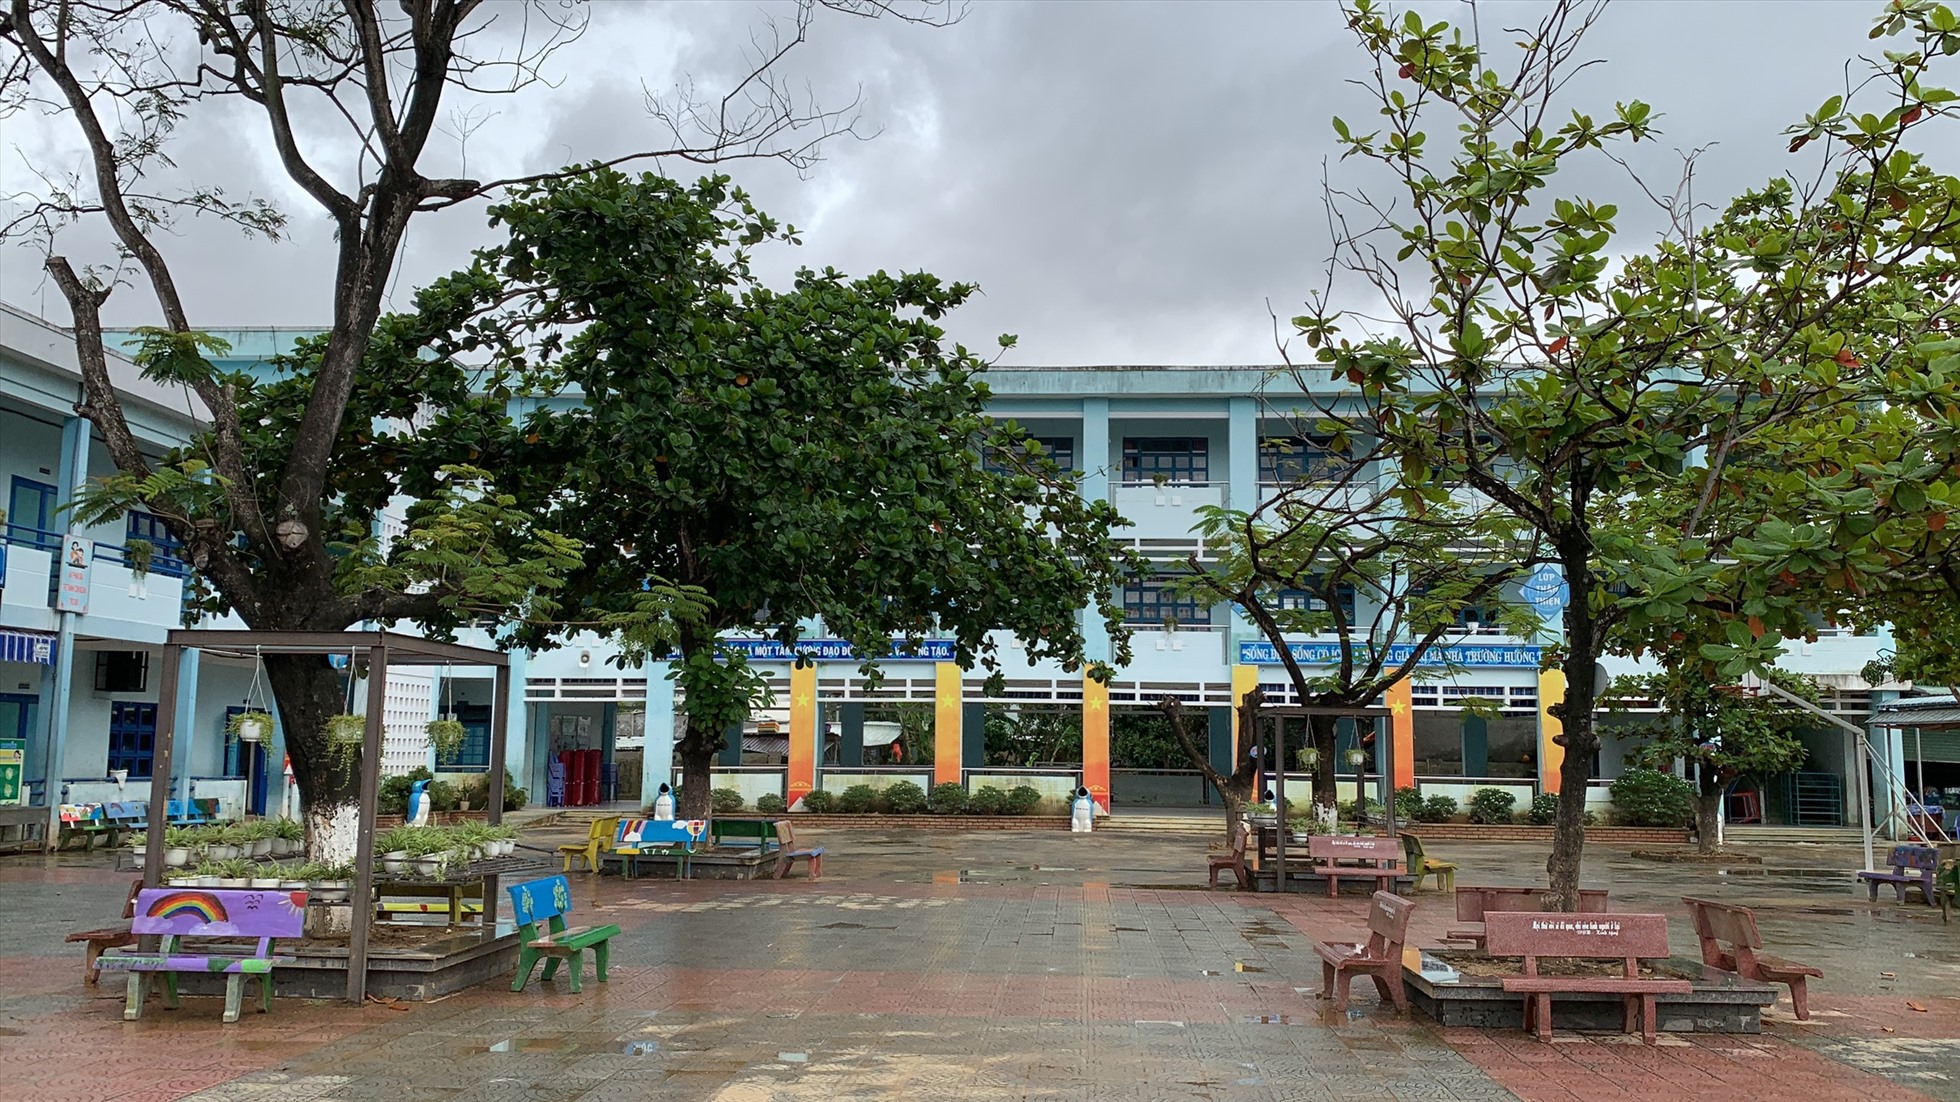 Đến ngà 19.10, trong lúc các điểm trường khác trên địa bàn thành phố Đà Nẵng, học sinh đã đi học trở lại bình thường thì sân trường Hồng Quang vẫn trong cảnh vắng lặng.